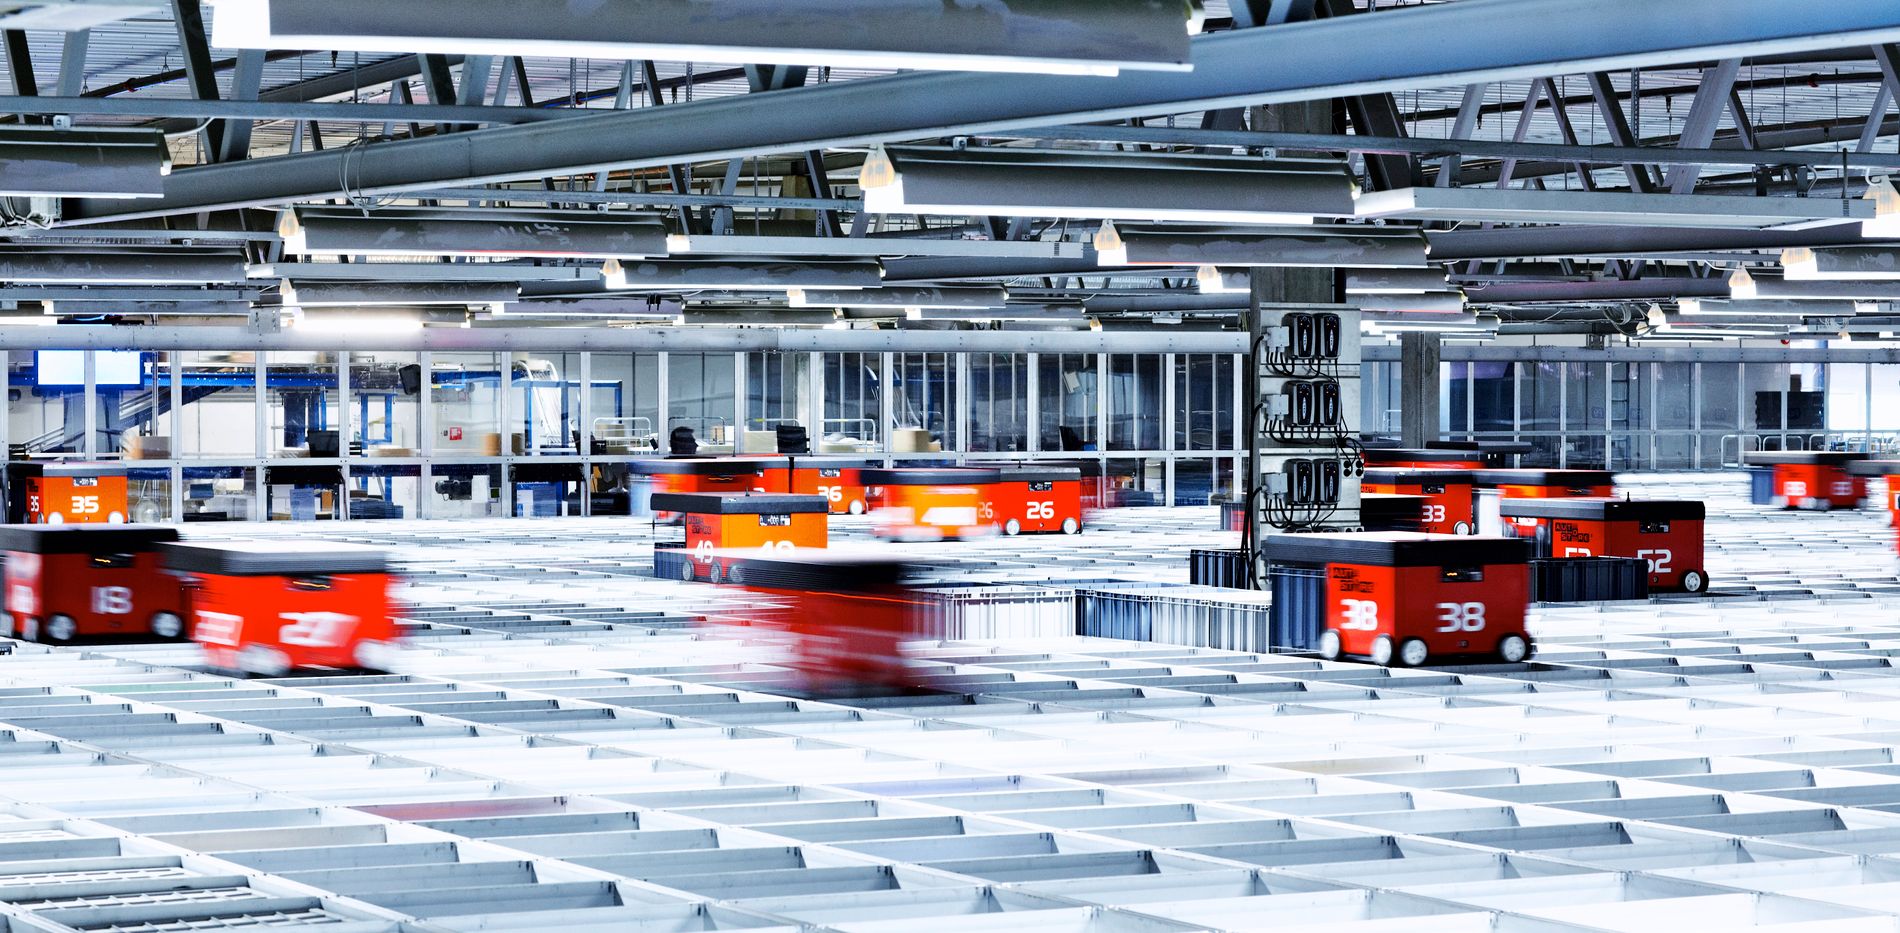 Det helautomatiserte lageret, Kuben, er svært effektivt. 75 roboter jobber kontinuerlig for å finne frem produkter til spente kunder. 